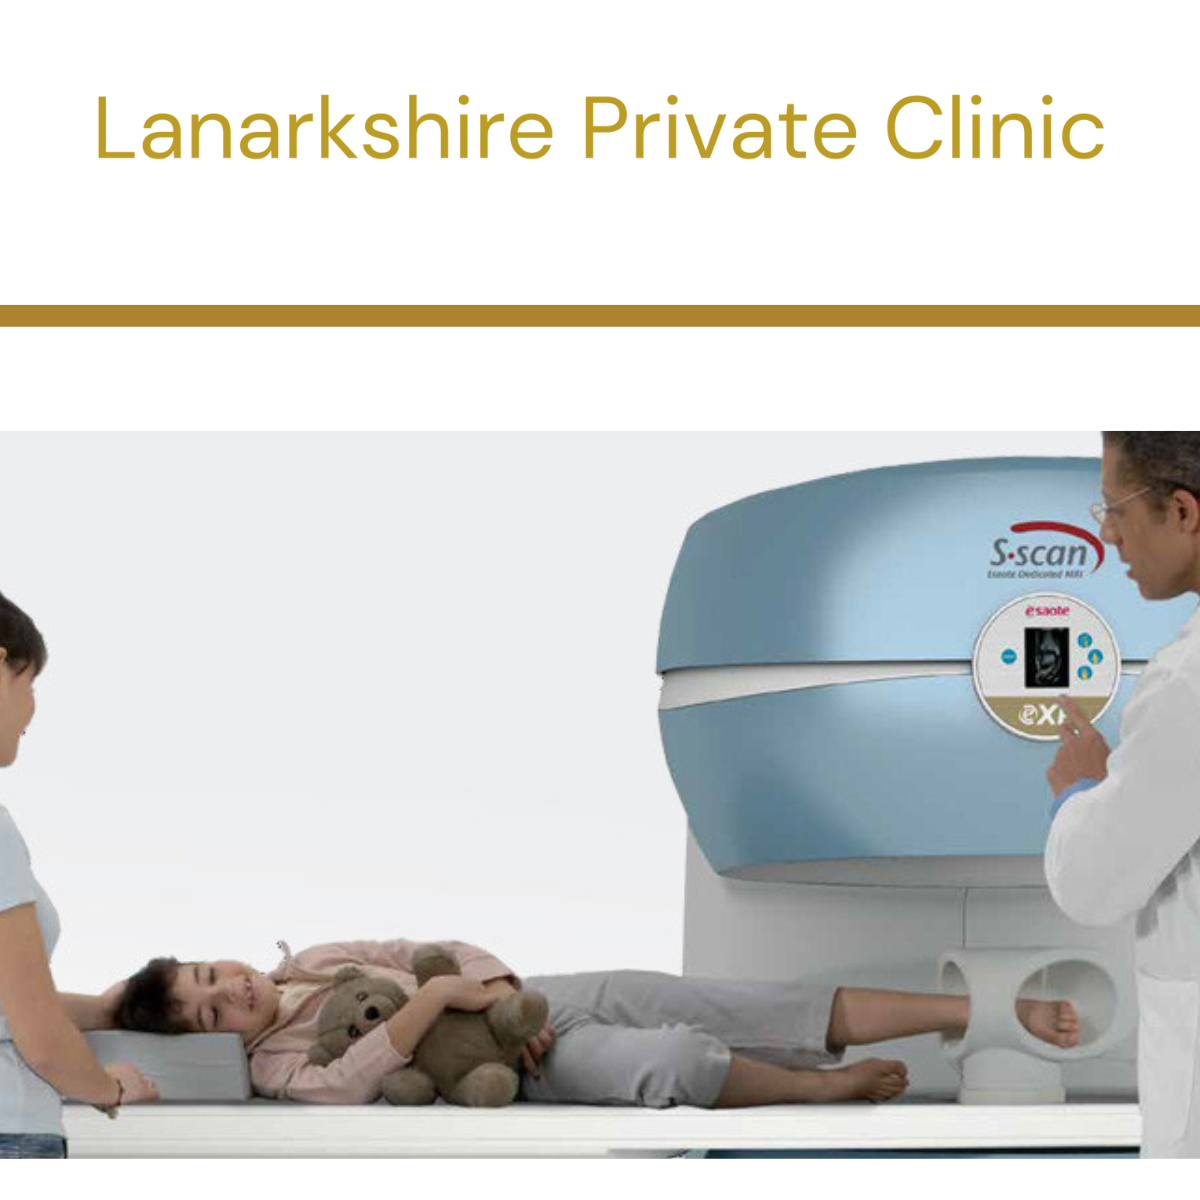 Lanarkshire Private Clinic Hamilton 01698 540380